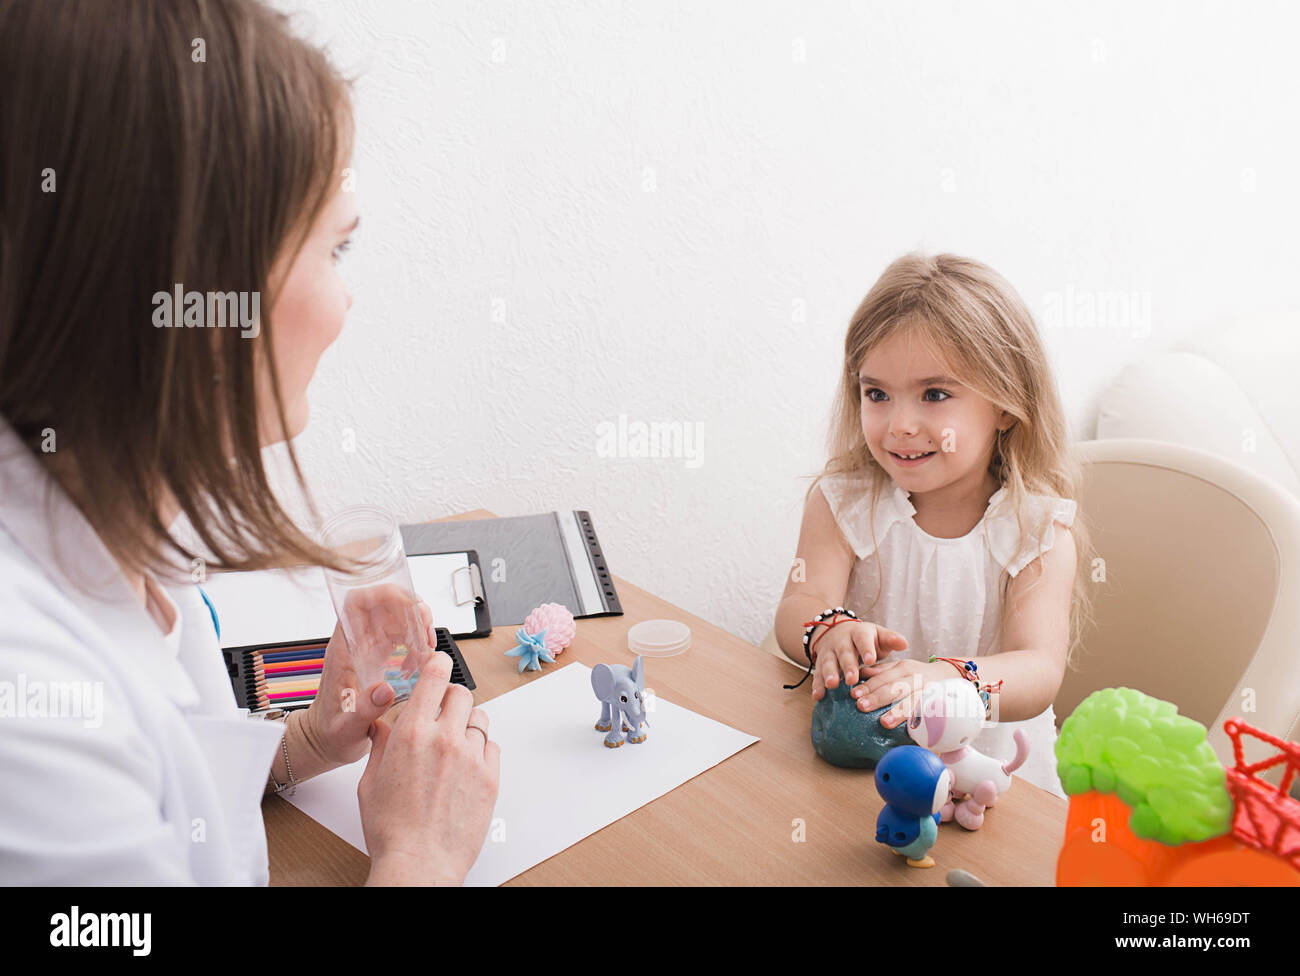 Süße kleine Mädchen tun, eine Übung in einer Therapiesitzung in der kinderpsychologe Büro Stockfoto